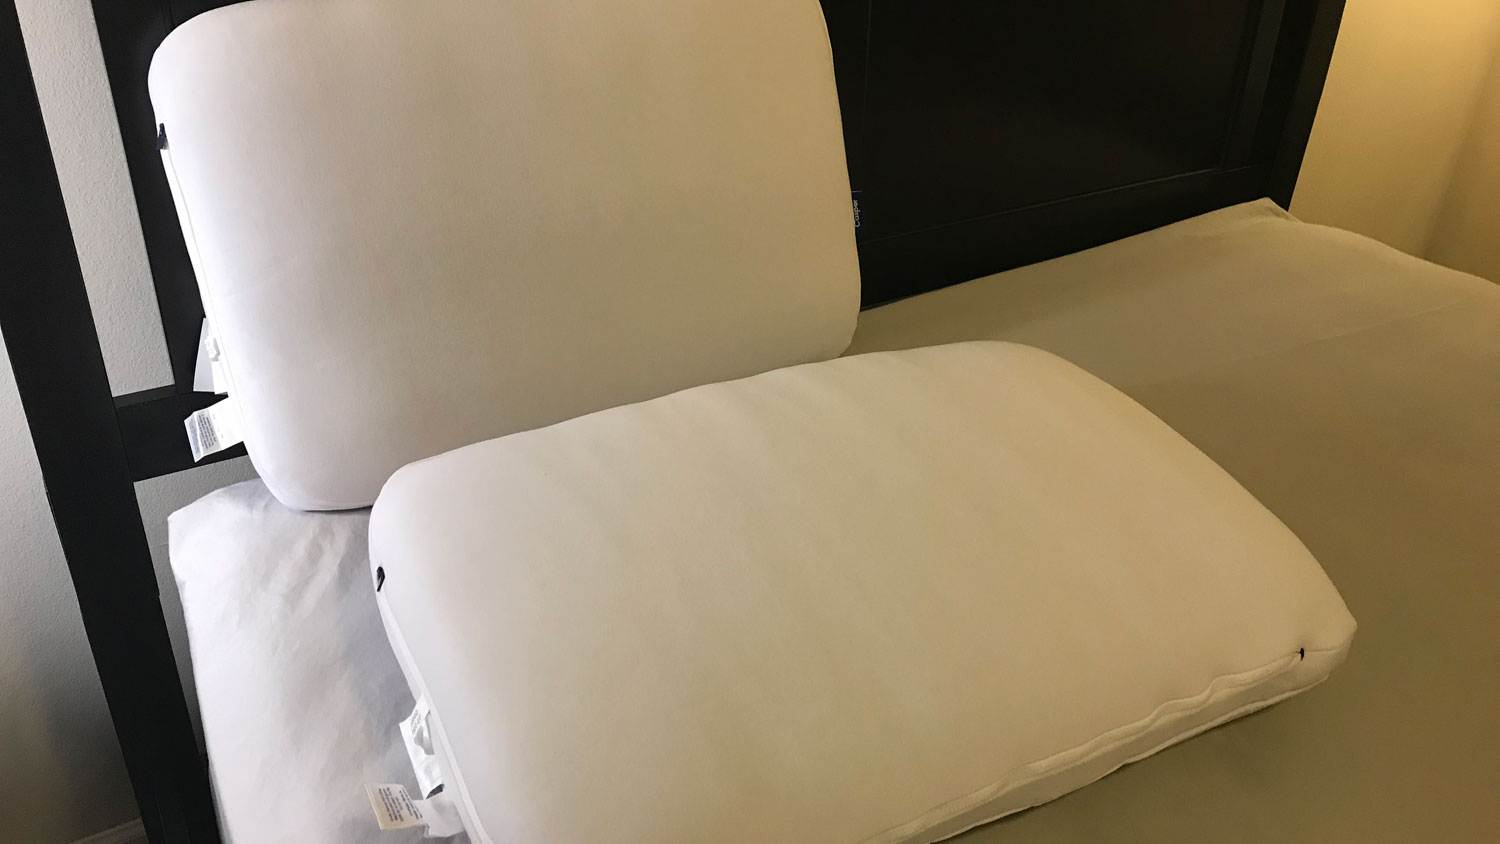 Duas almofadas de espuma Casper com tecnologia Snow em uma cama